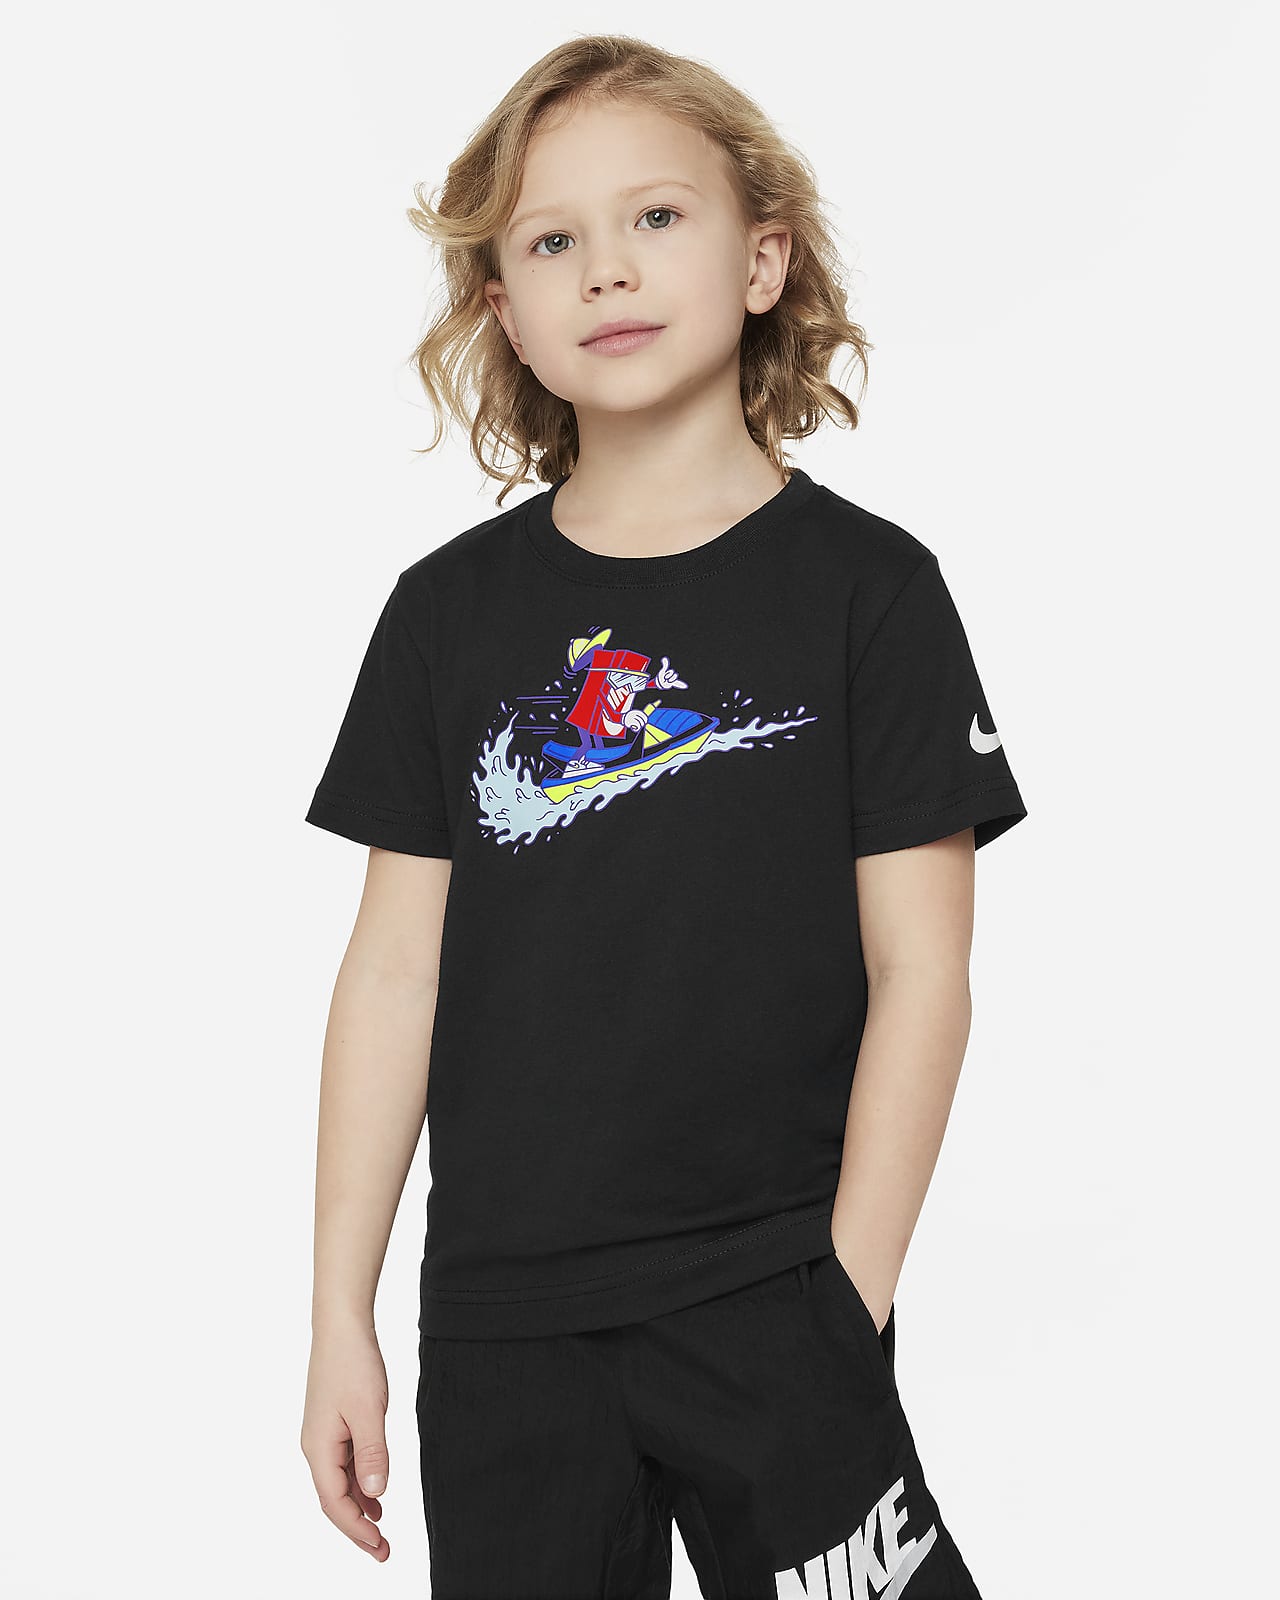 T-shirt Nike Jet Ski för barn